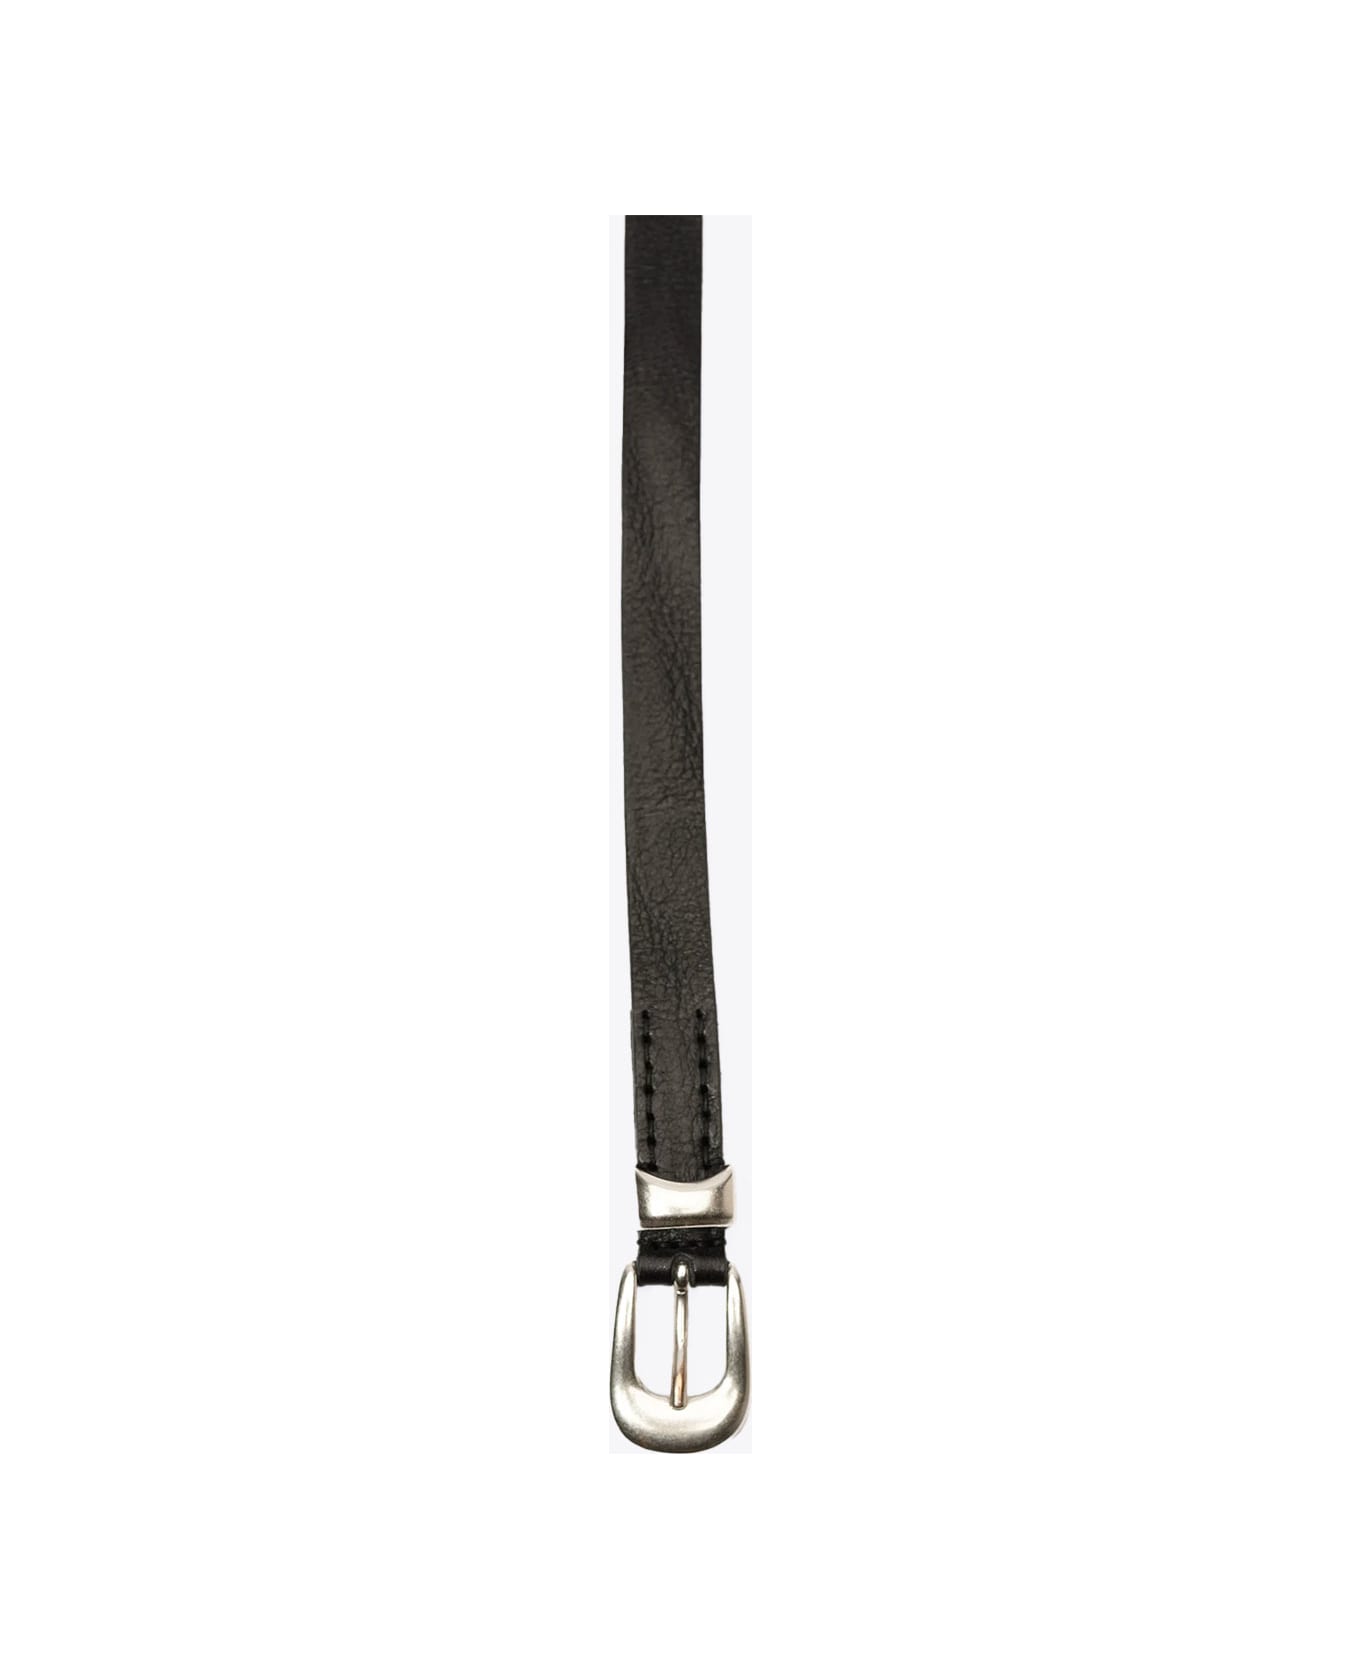 Our Legacy 2 Cm Belt Black leather belt - 2 cm belt - Nero